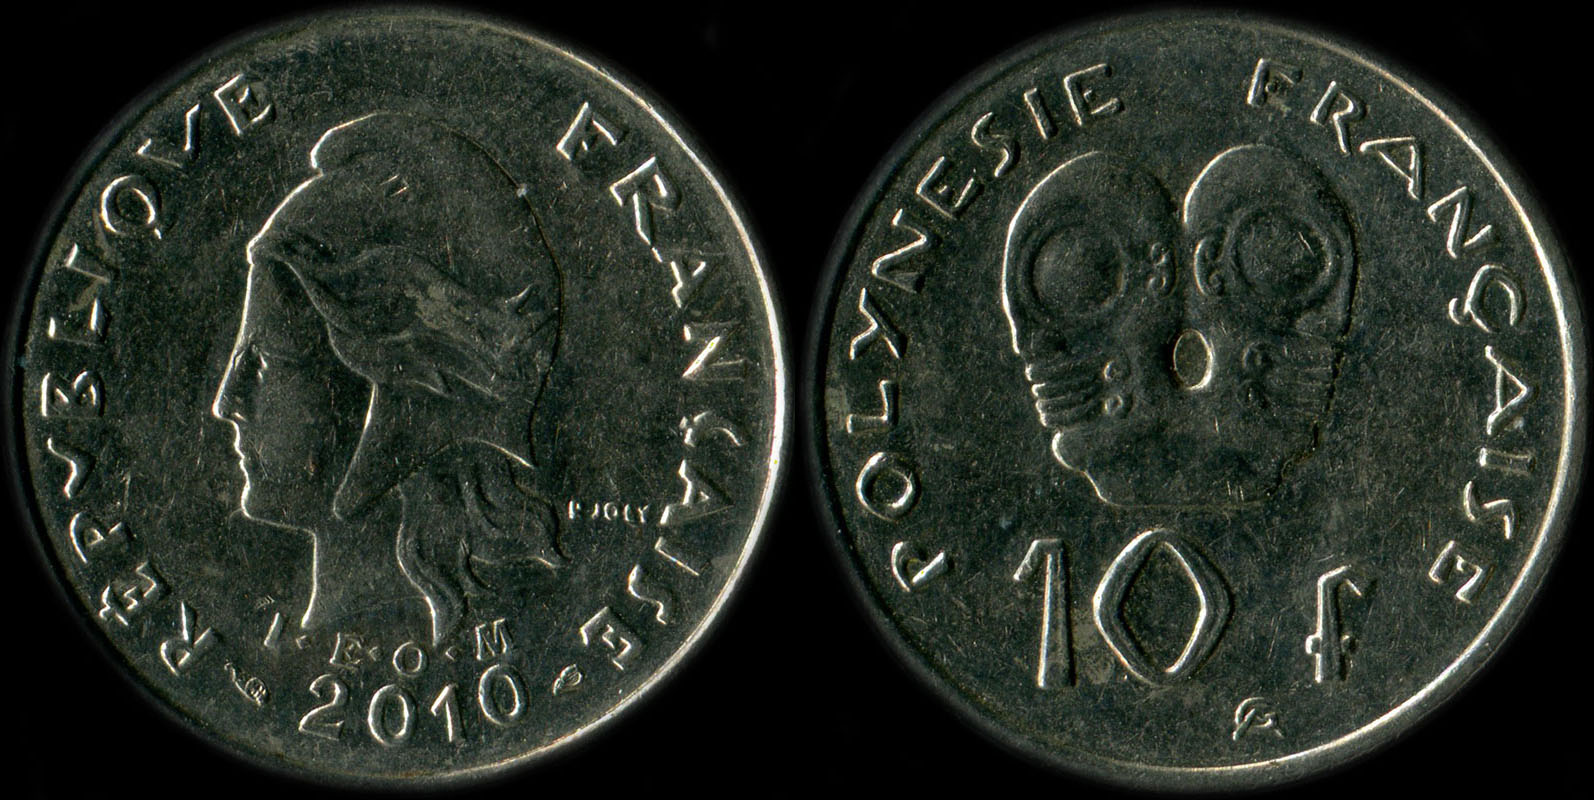 Pice de 10 francs 2010  - I.E.O.M. Polynsie franaise